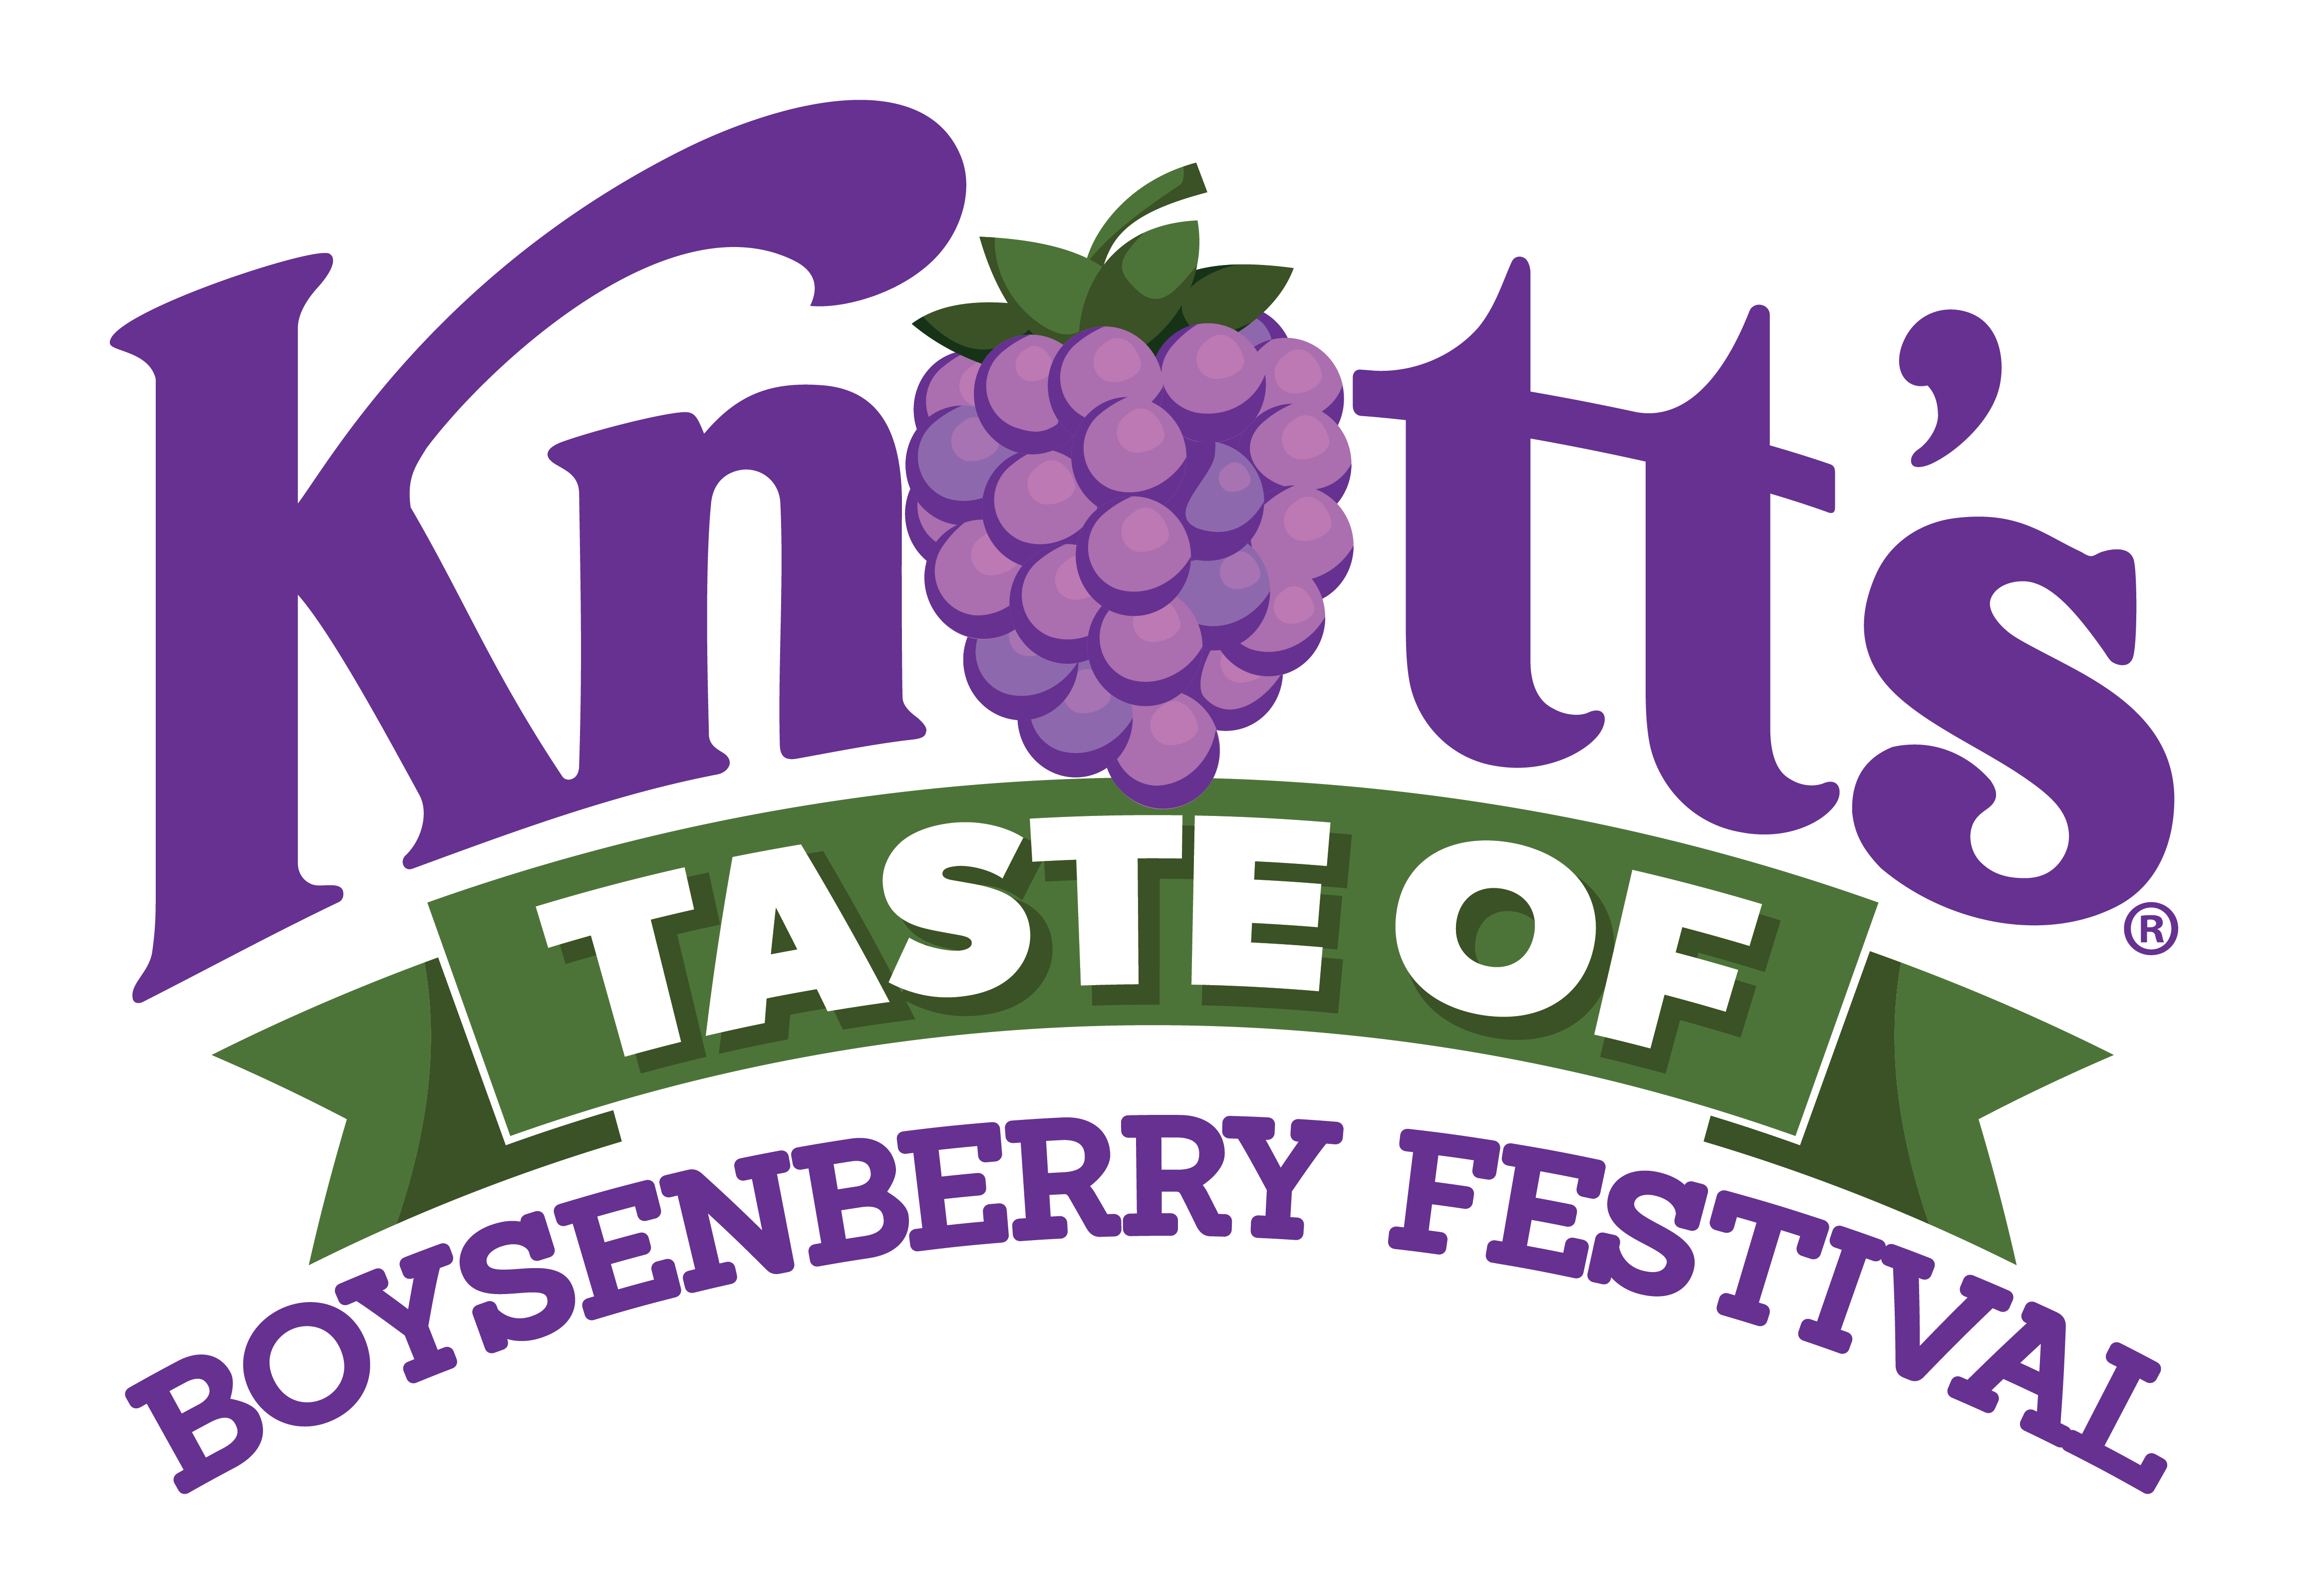 Knott’s the Boysenberry Festival Back in Taste of Boysenberry